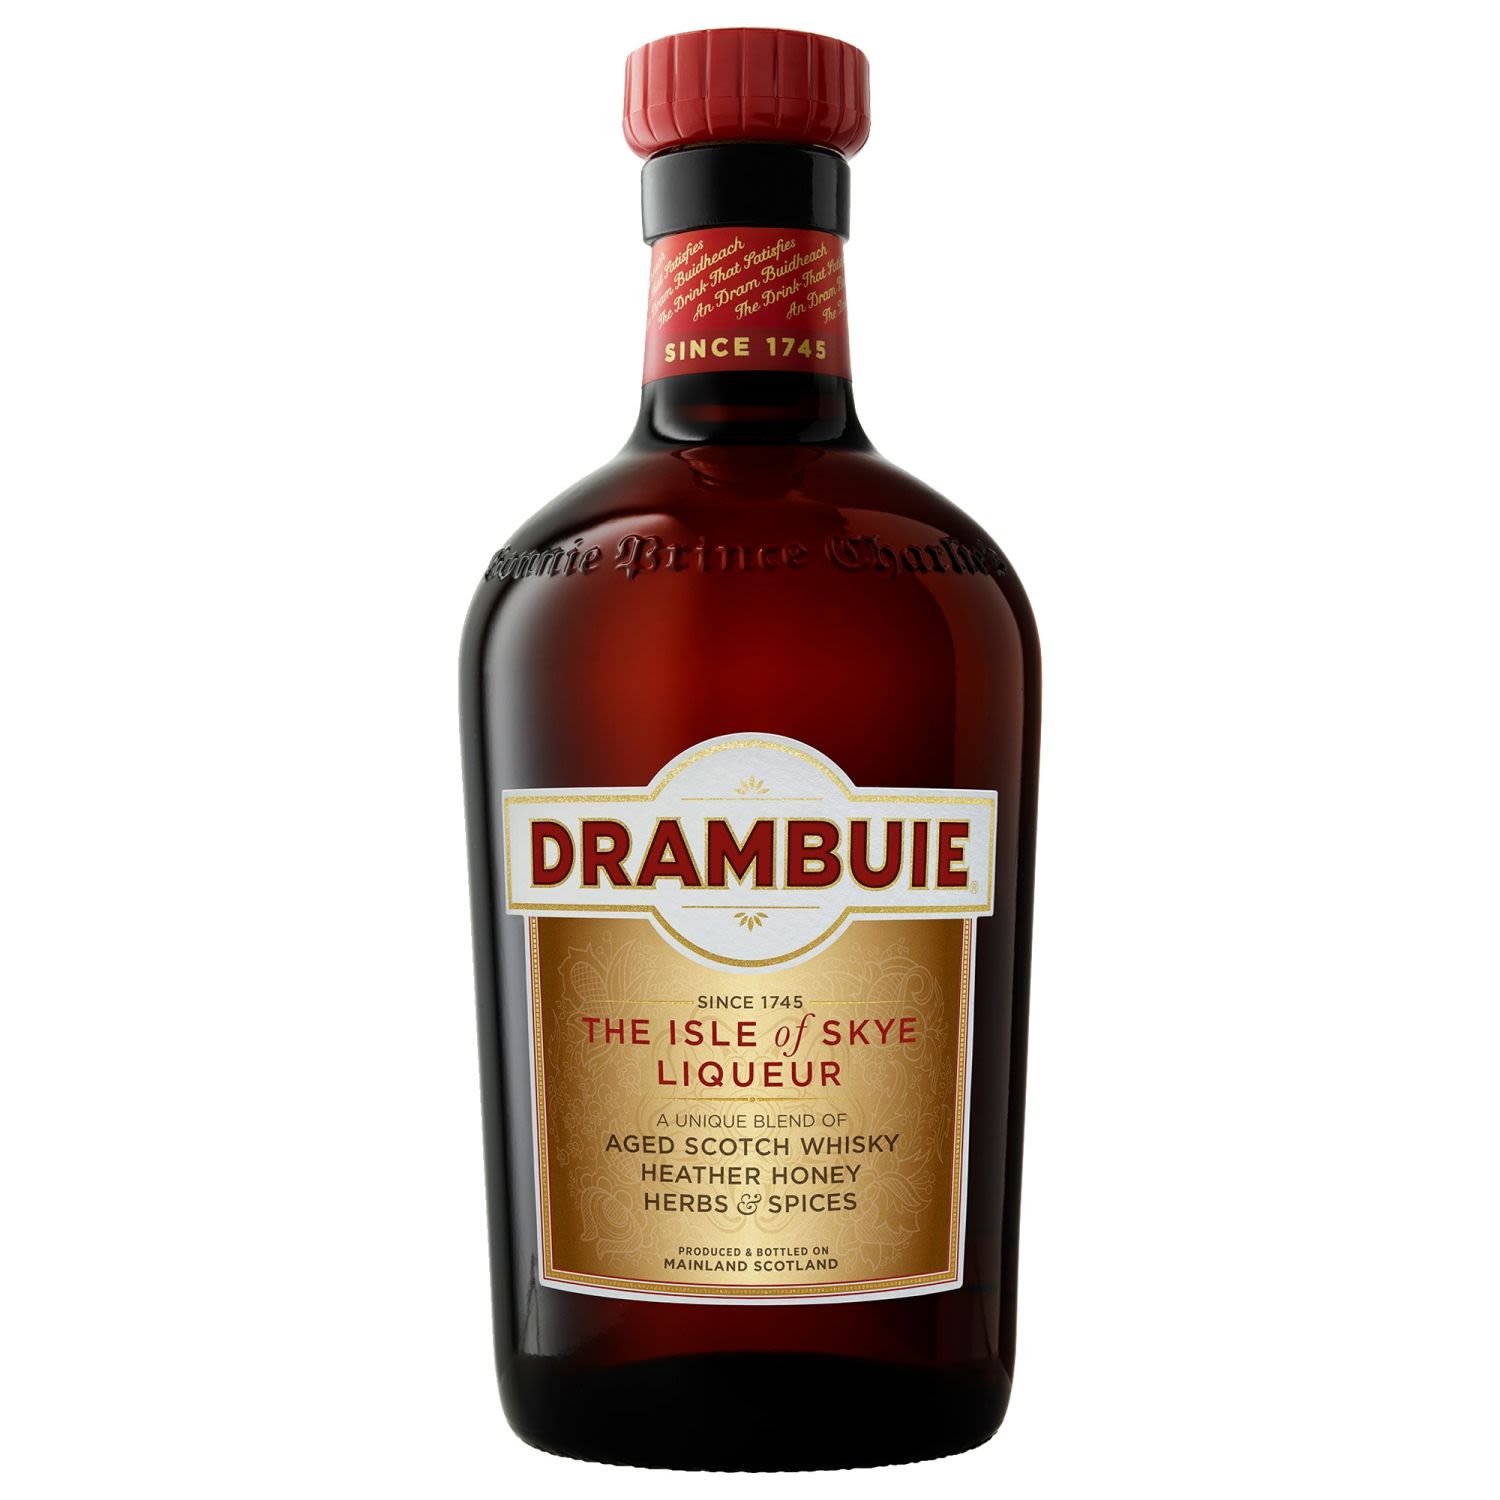 Drambuie Scotch Whisky Liqueur 700mL Bottle